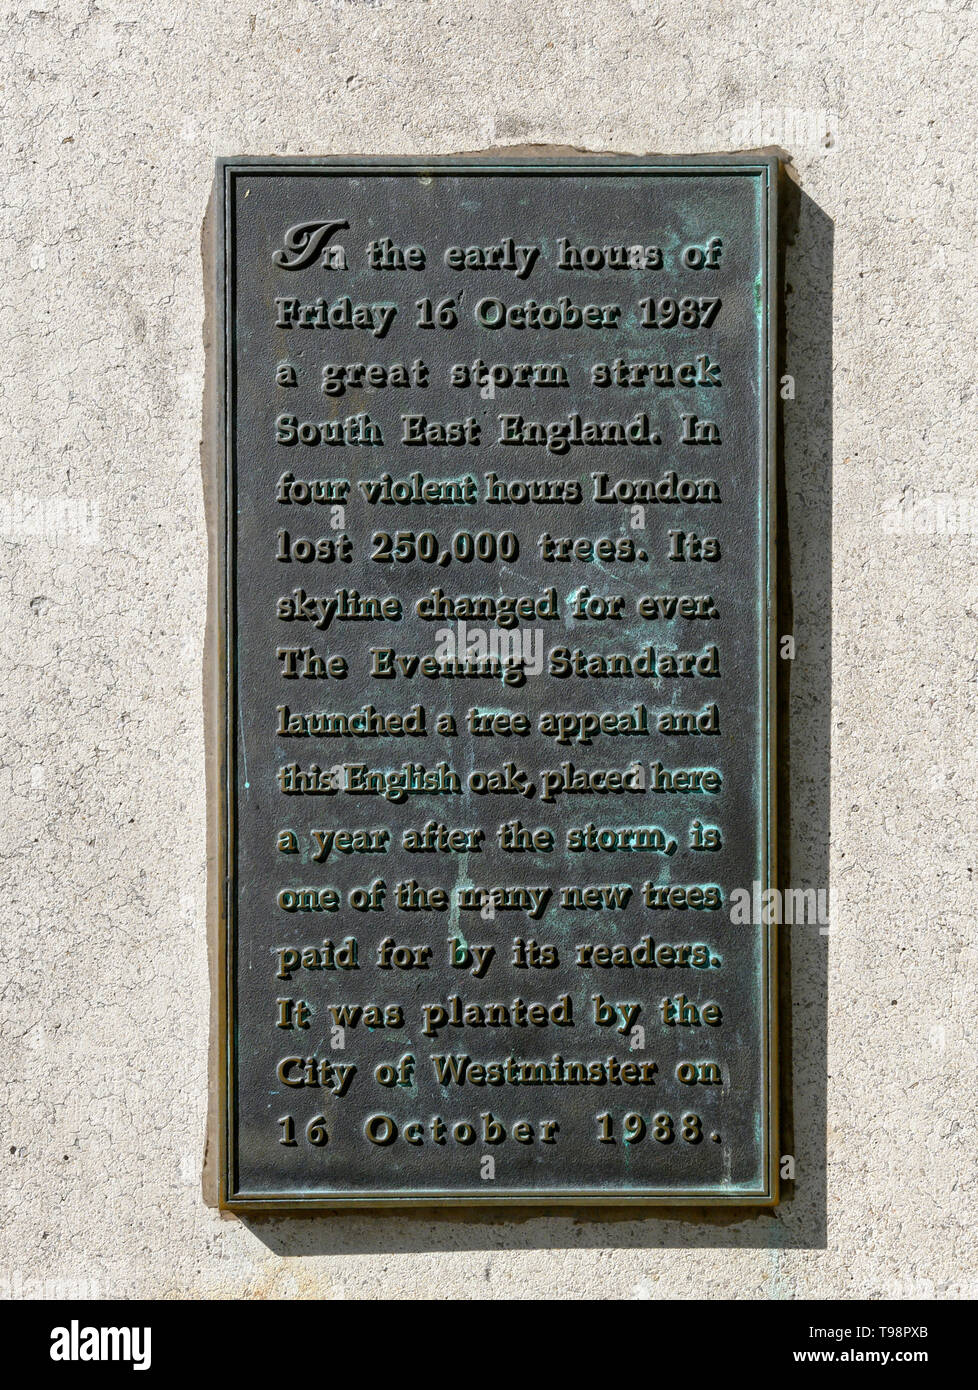 Placa conmemorativa en el Charing Cross, Londres, describiendo la gran tormenta de octubre de 1987, que golpeó el sureste de Inglaterra destrying miles de árboles. Foto de stock